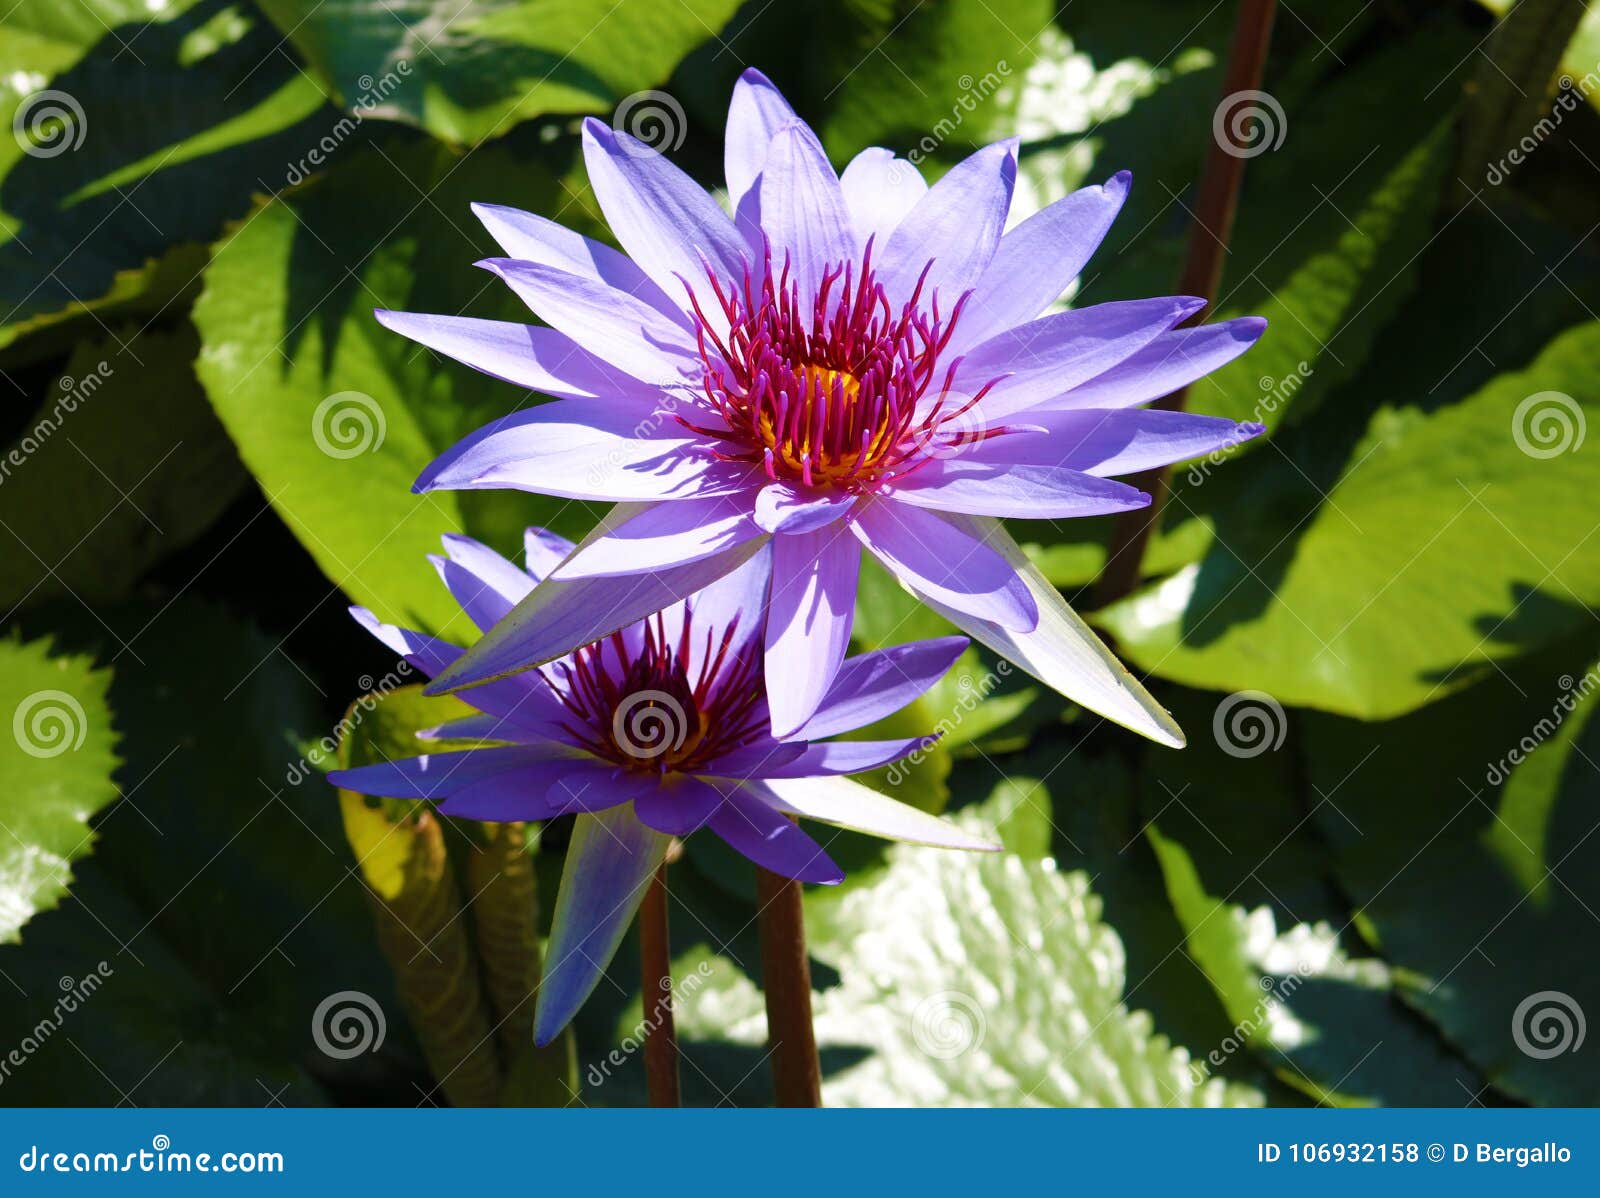 lily flower loto purple flor de loto beautful colors